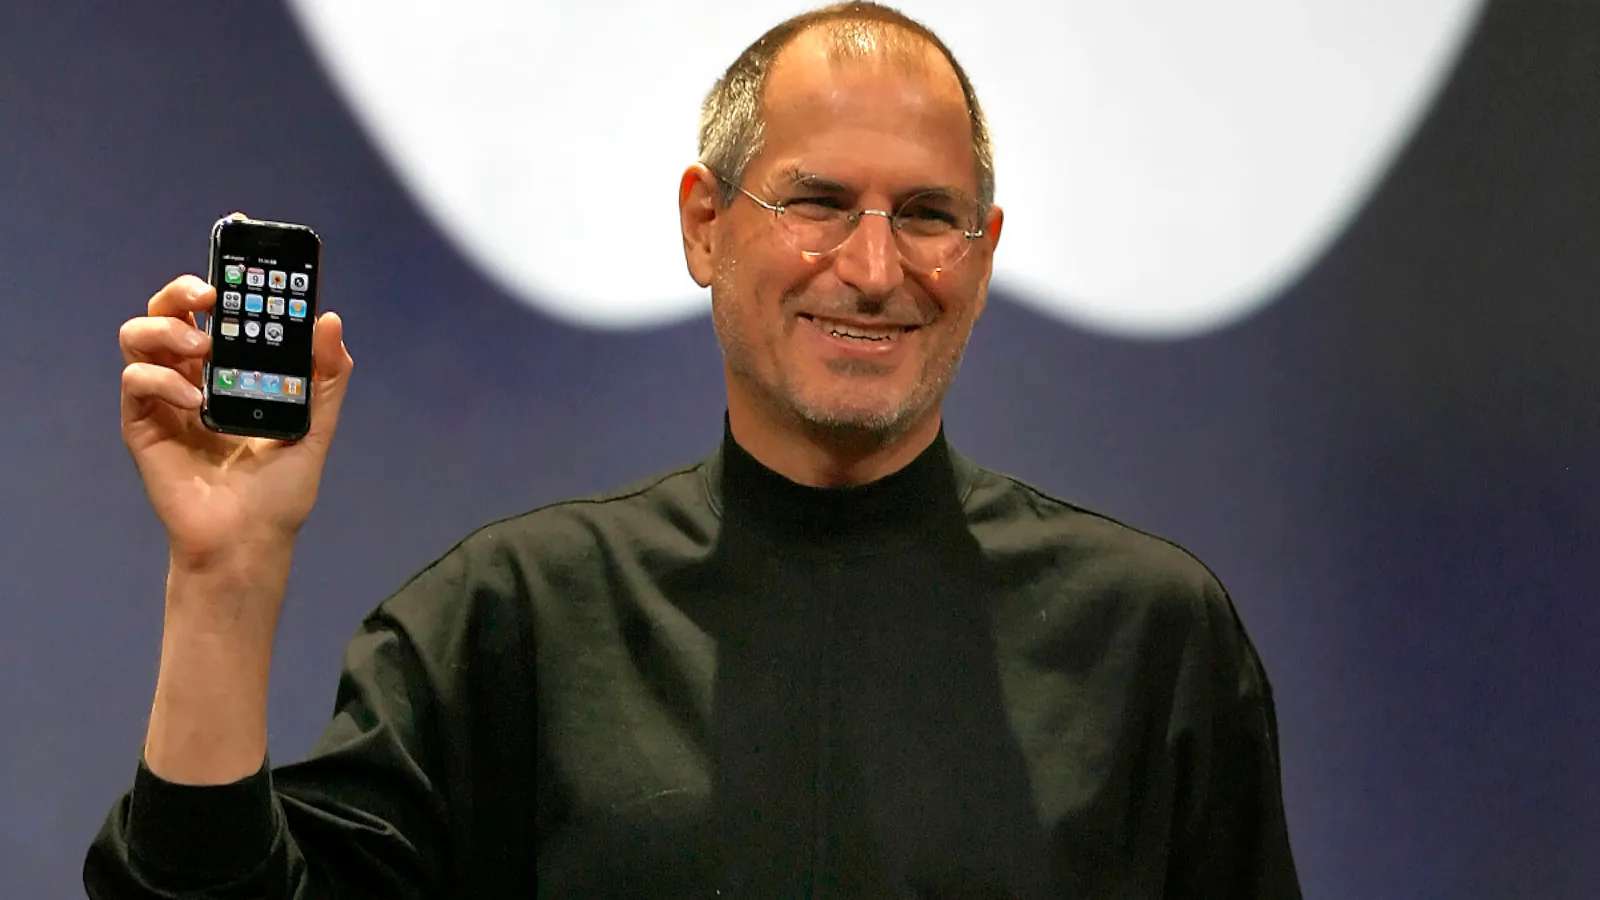 Steve Jobs z Apple puzzle online ze zdjęcia